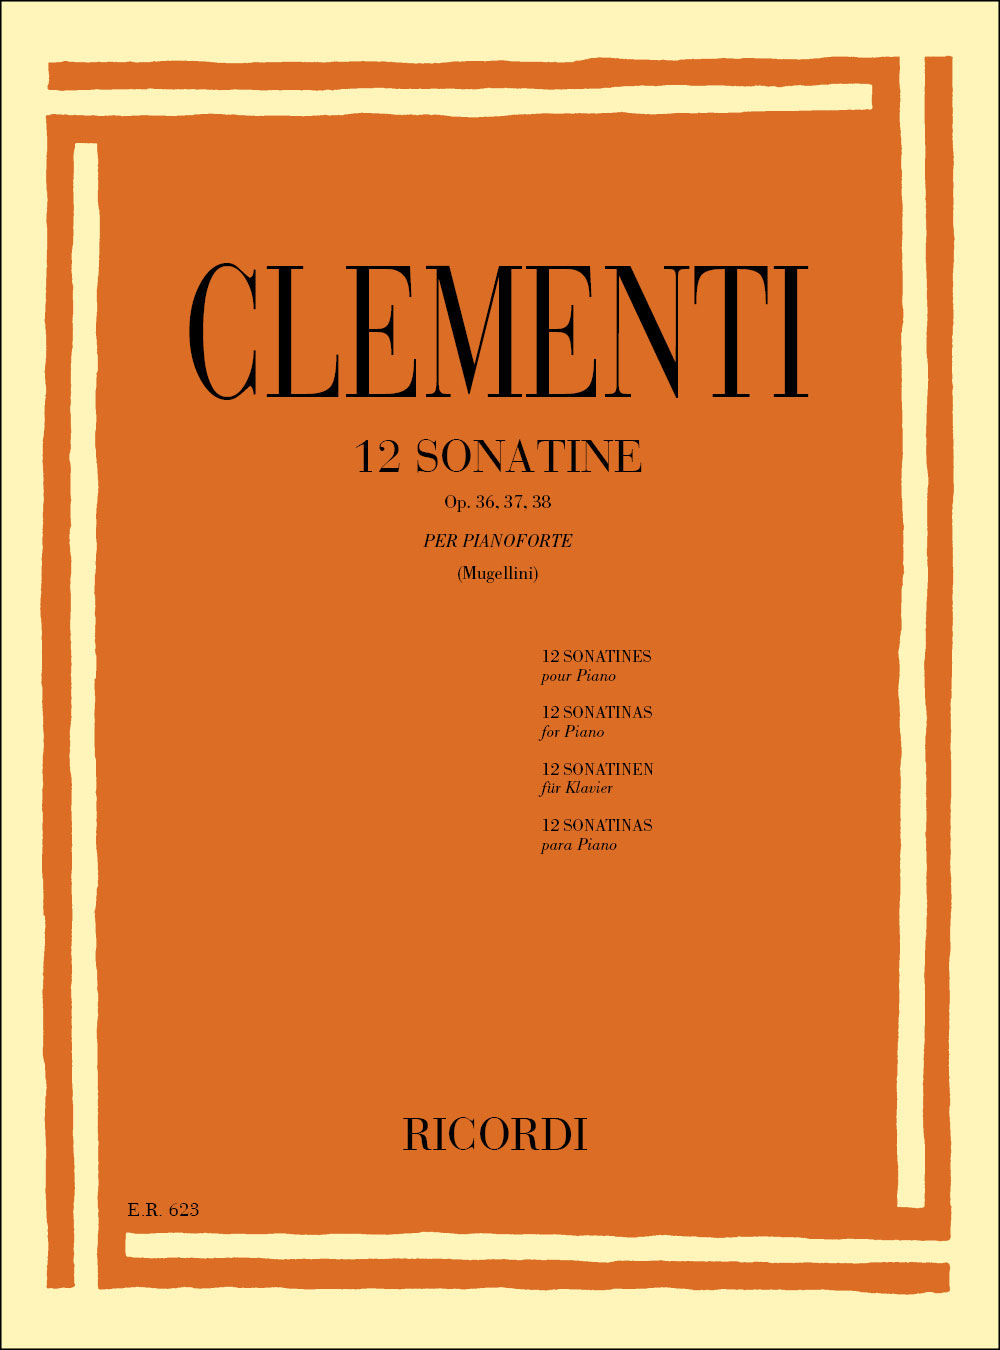 RICORDI CLEMENTI M. - 12 SONATINE OP. 36 37 38 - PIANO